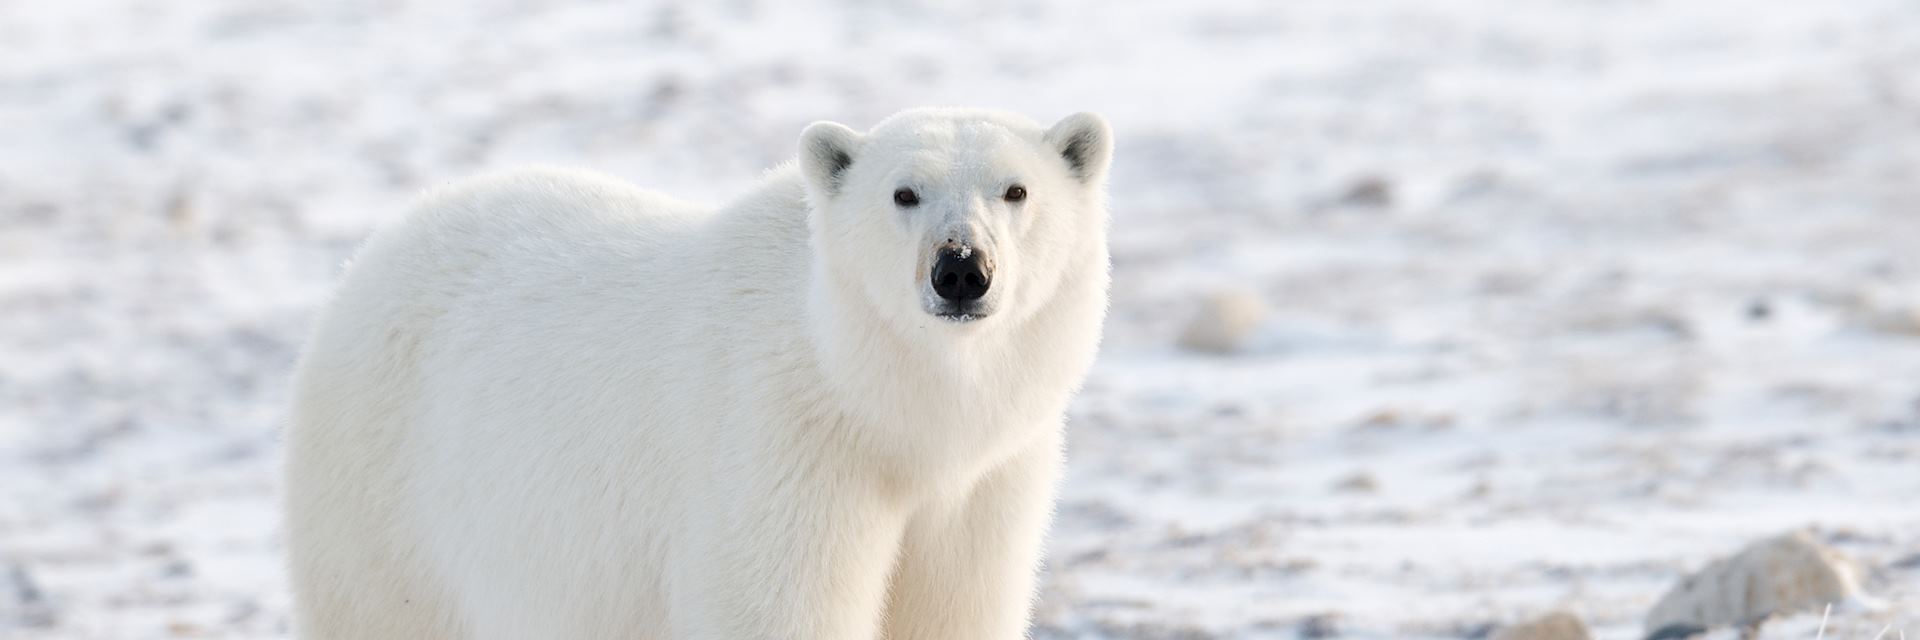 Polar bear on the tundra, Churchill